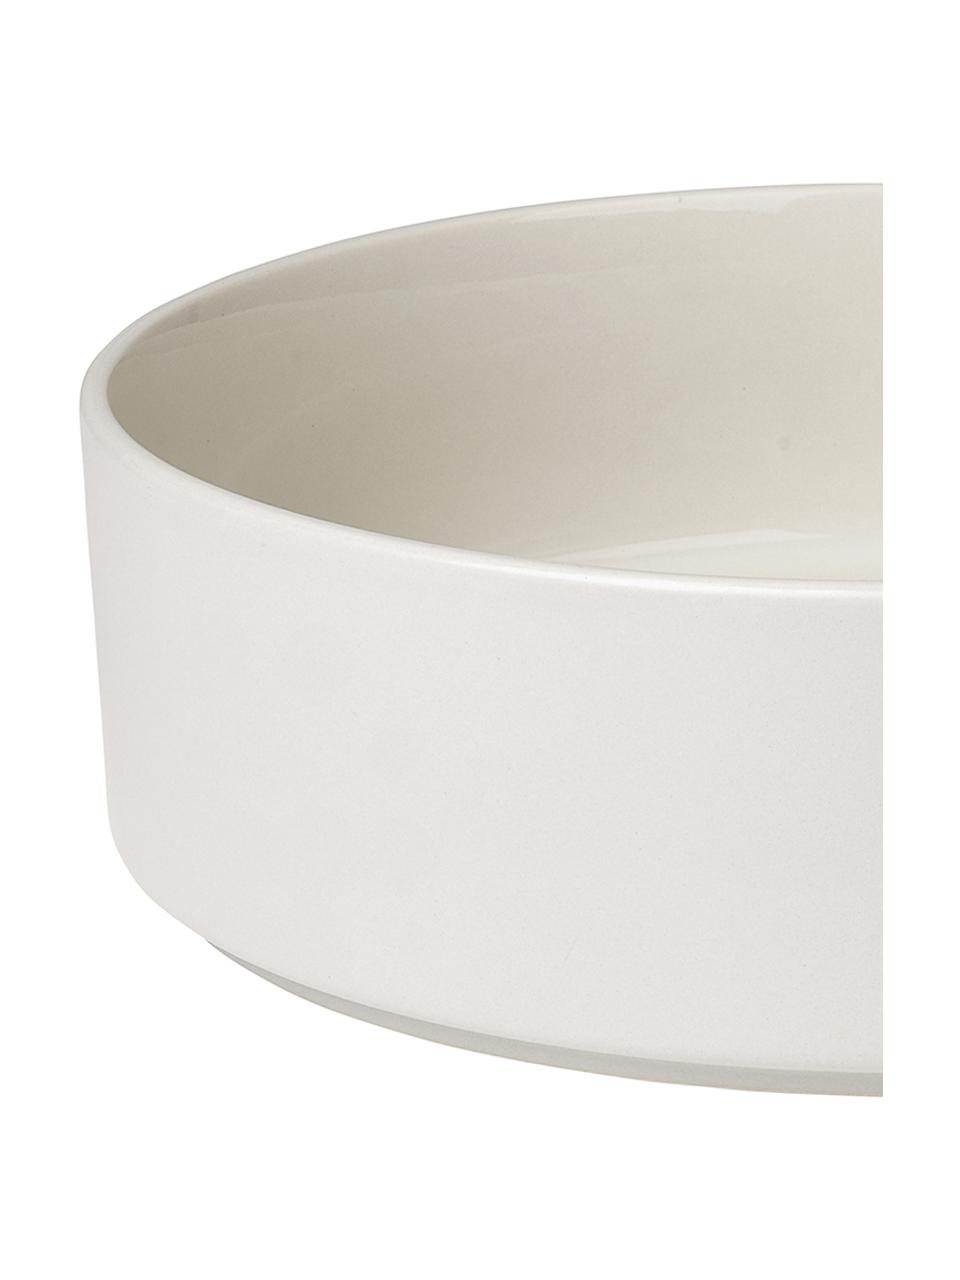 Centrotavola opaco/lucido Pilar, Ø27 cm, Ceramica, Bianco crema, Ø 27 cm